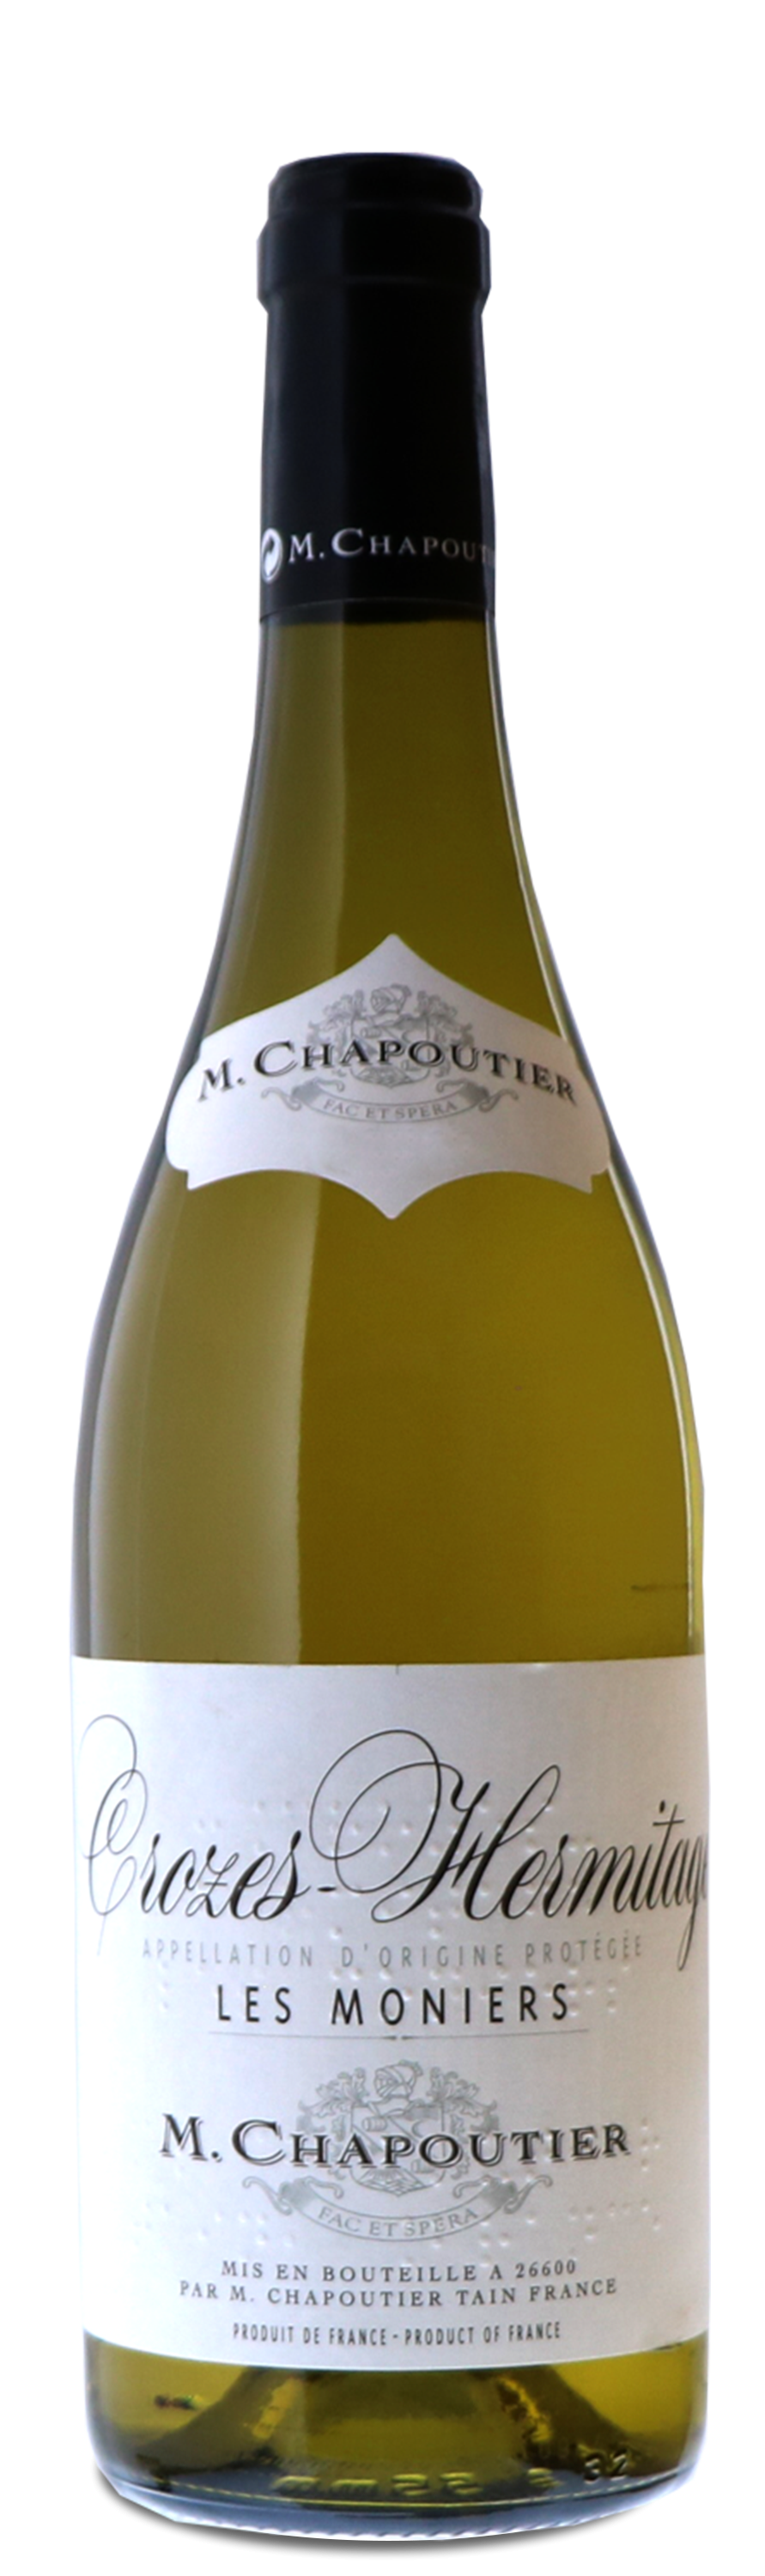 Crozes Hermitage vin blanc M Chapoutier